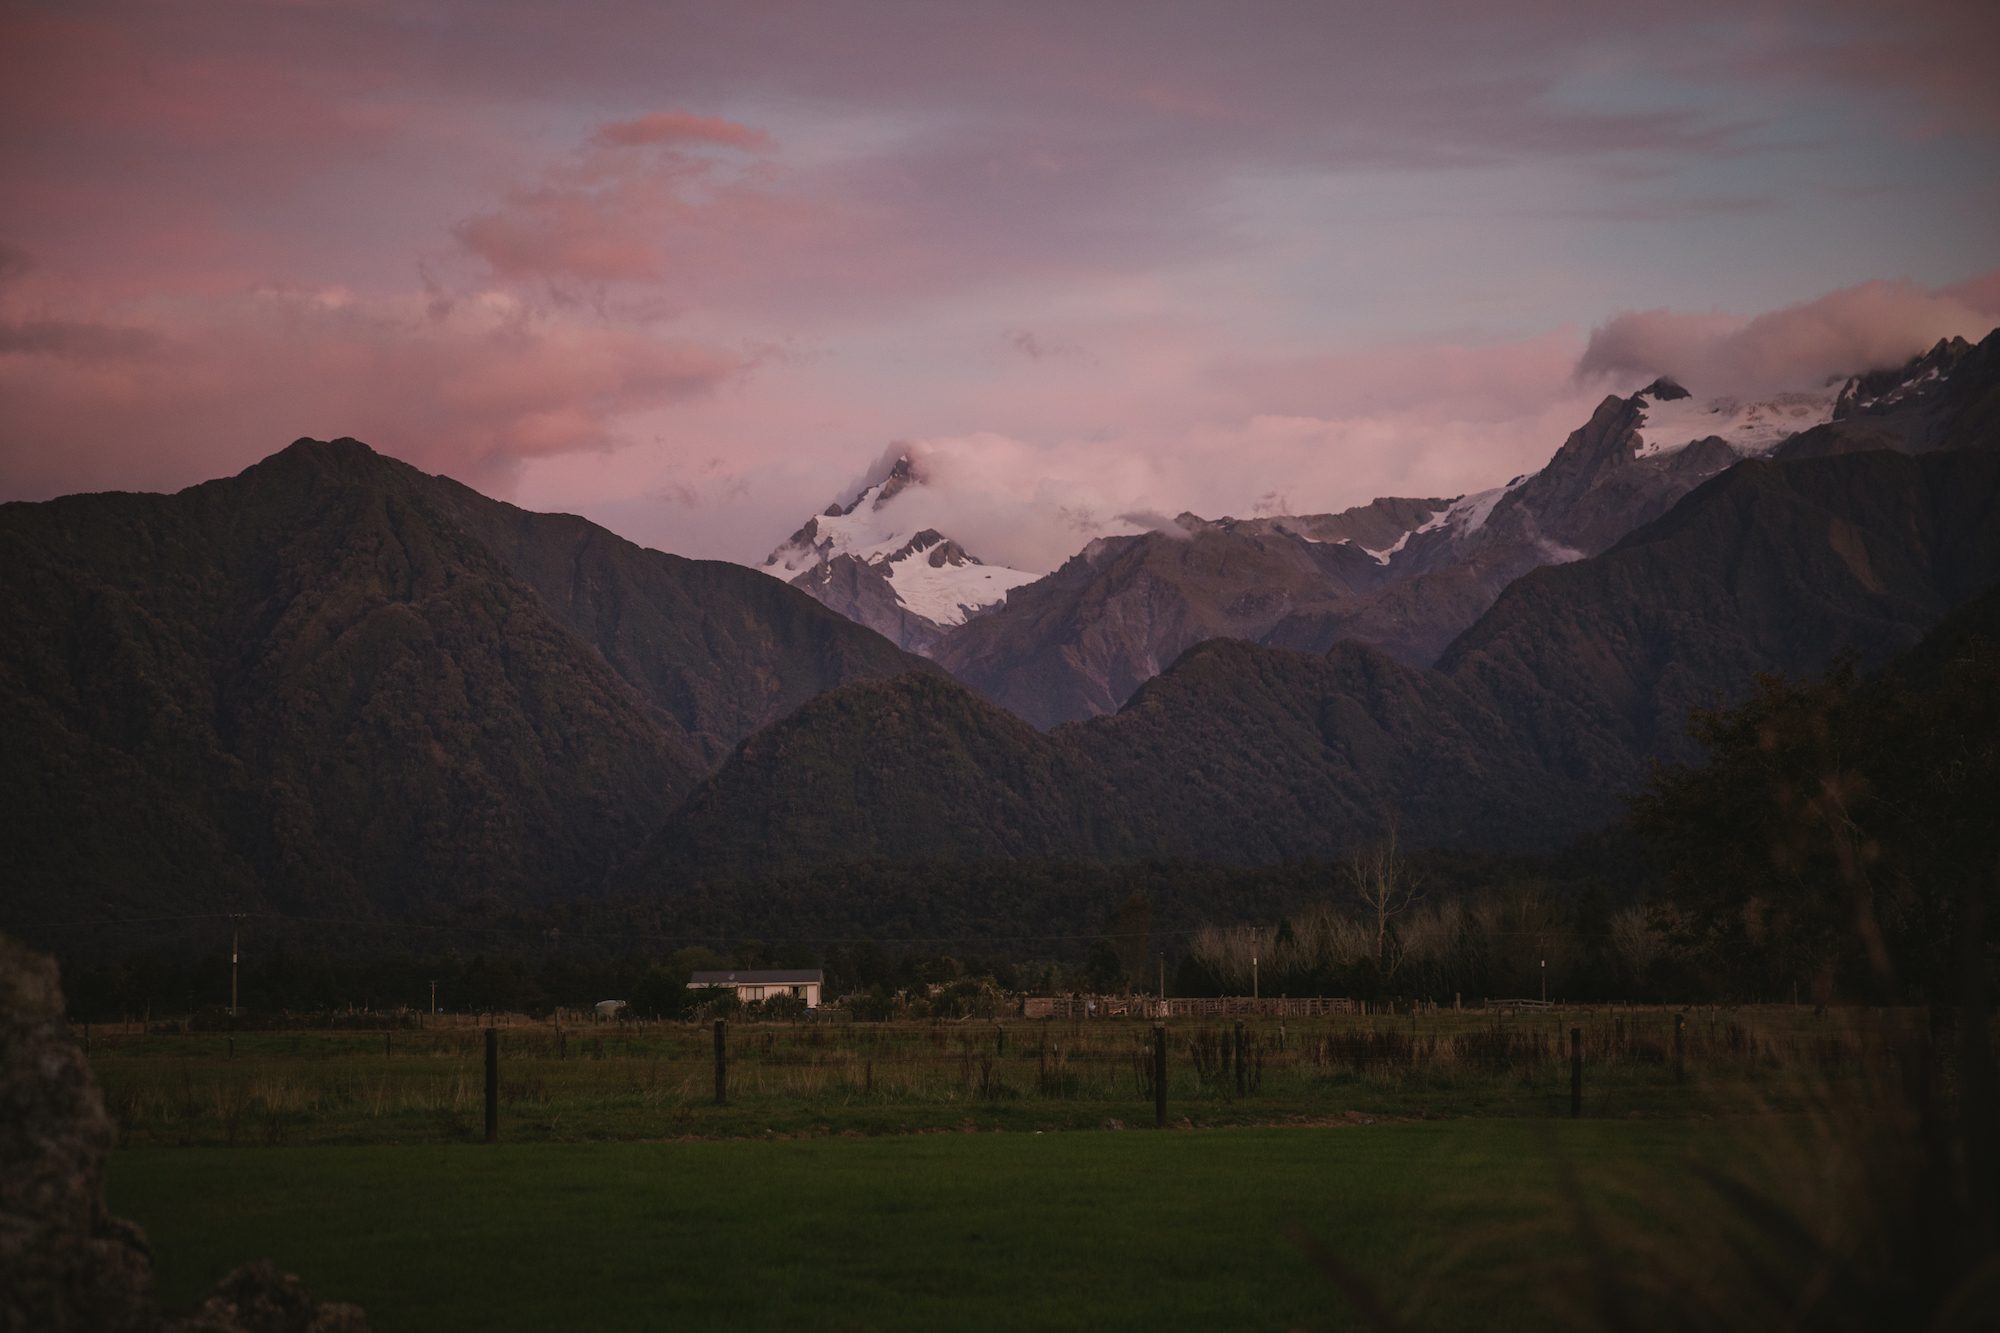 New Zealand's west coast